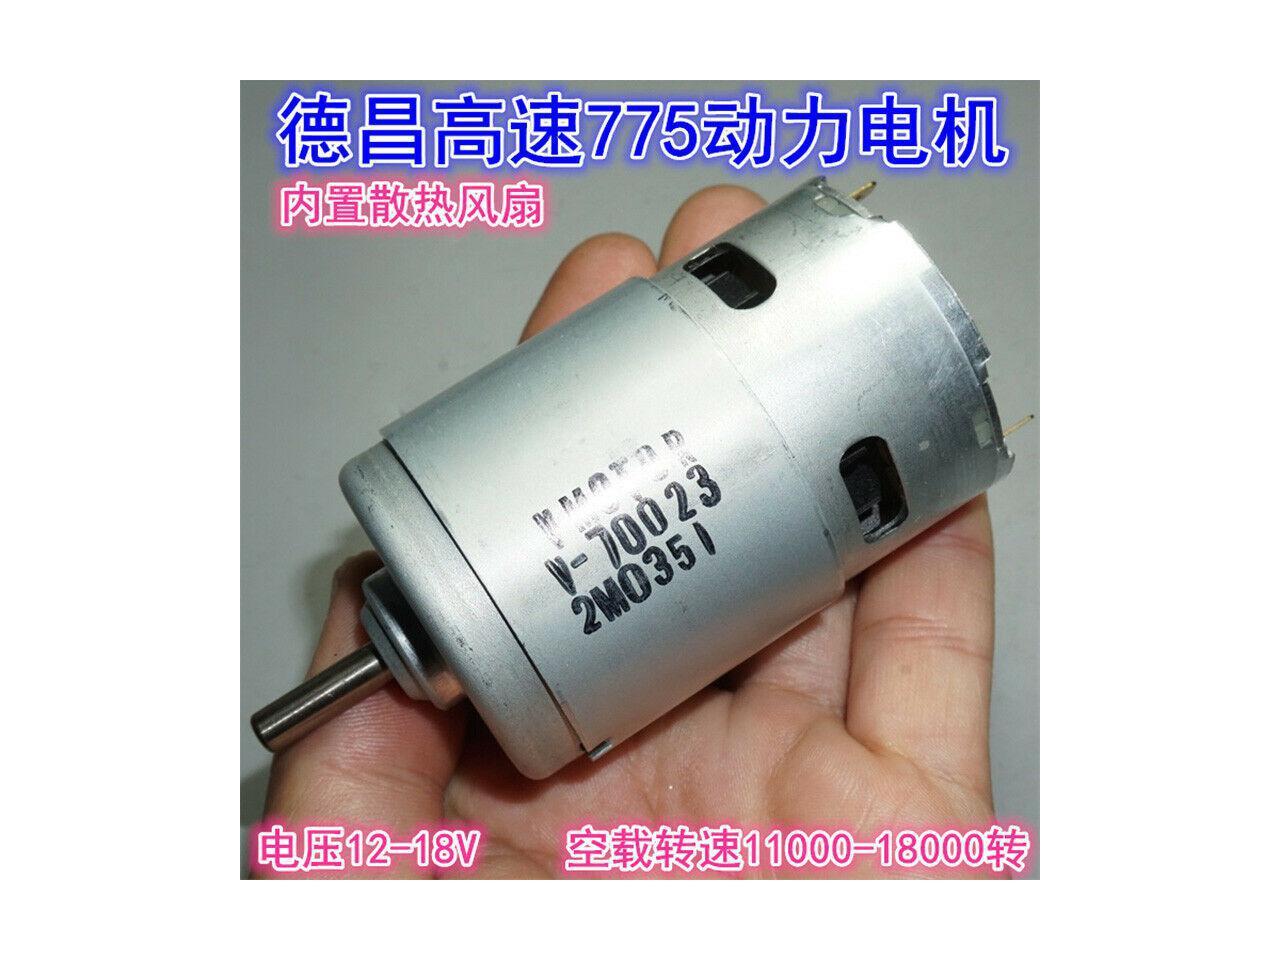 MABUCHI RS-550VC-6038 DC12V 14.4V 18V High Speed Power Electric Drill Tool Motor 